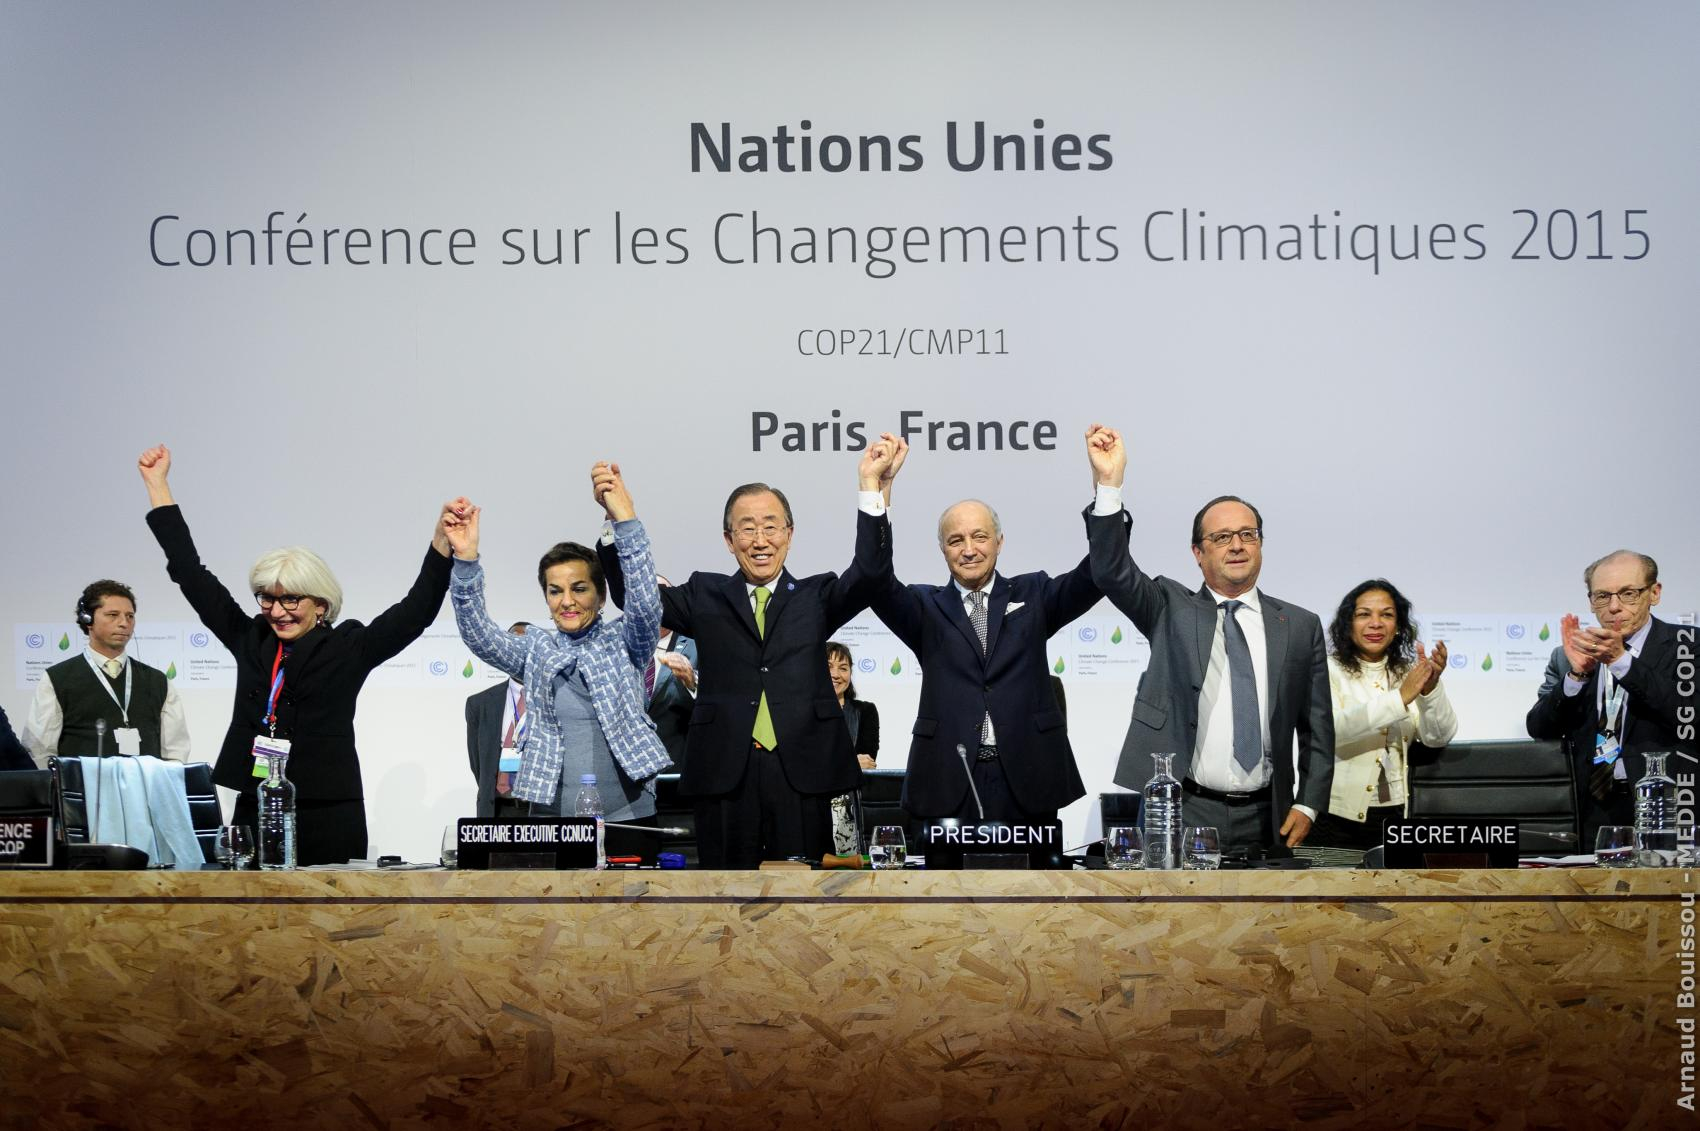 L’accord de Paris, adopté lors de la COP21 en 2015, est le premier traité international visant à lutter contre le réchauffement climatique.  
© Arnaud  Bouissou